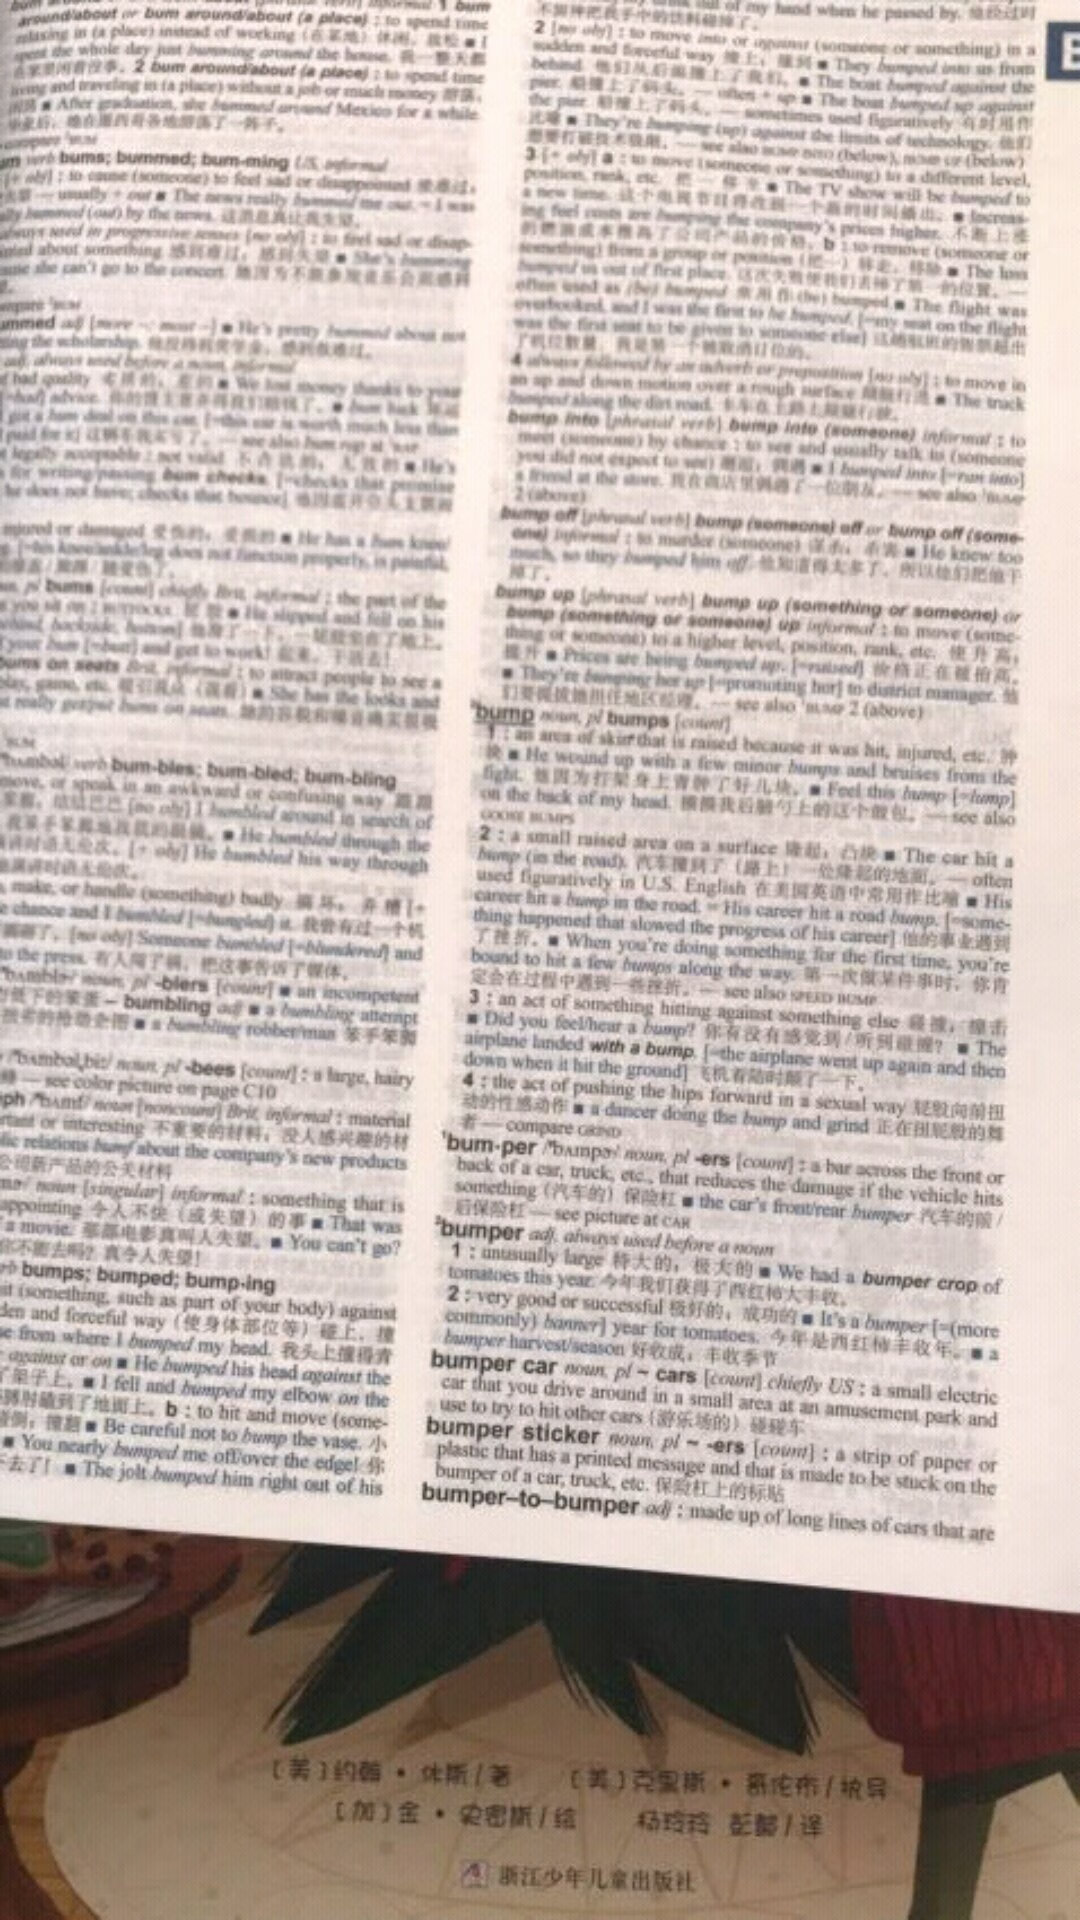 字典很厚很厚，印刷的很清晰，不错的？